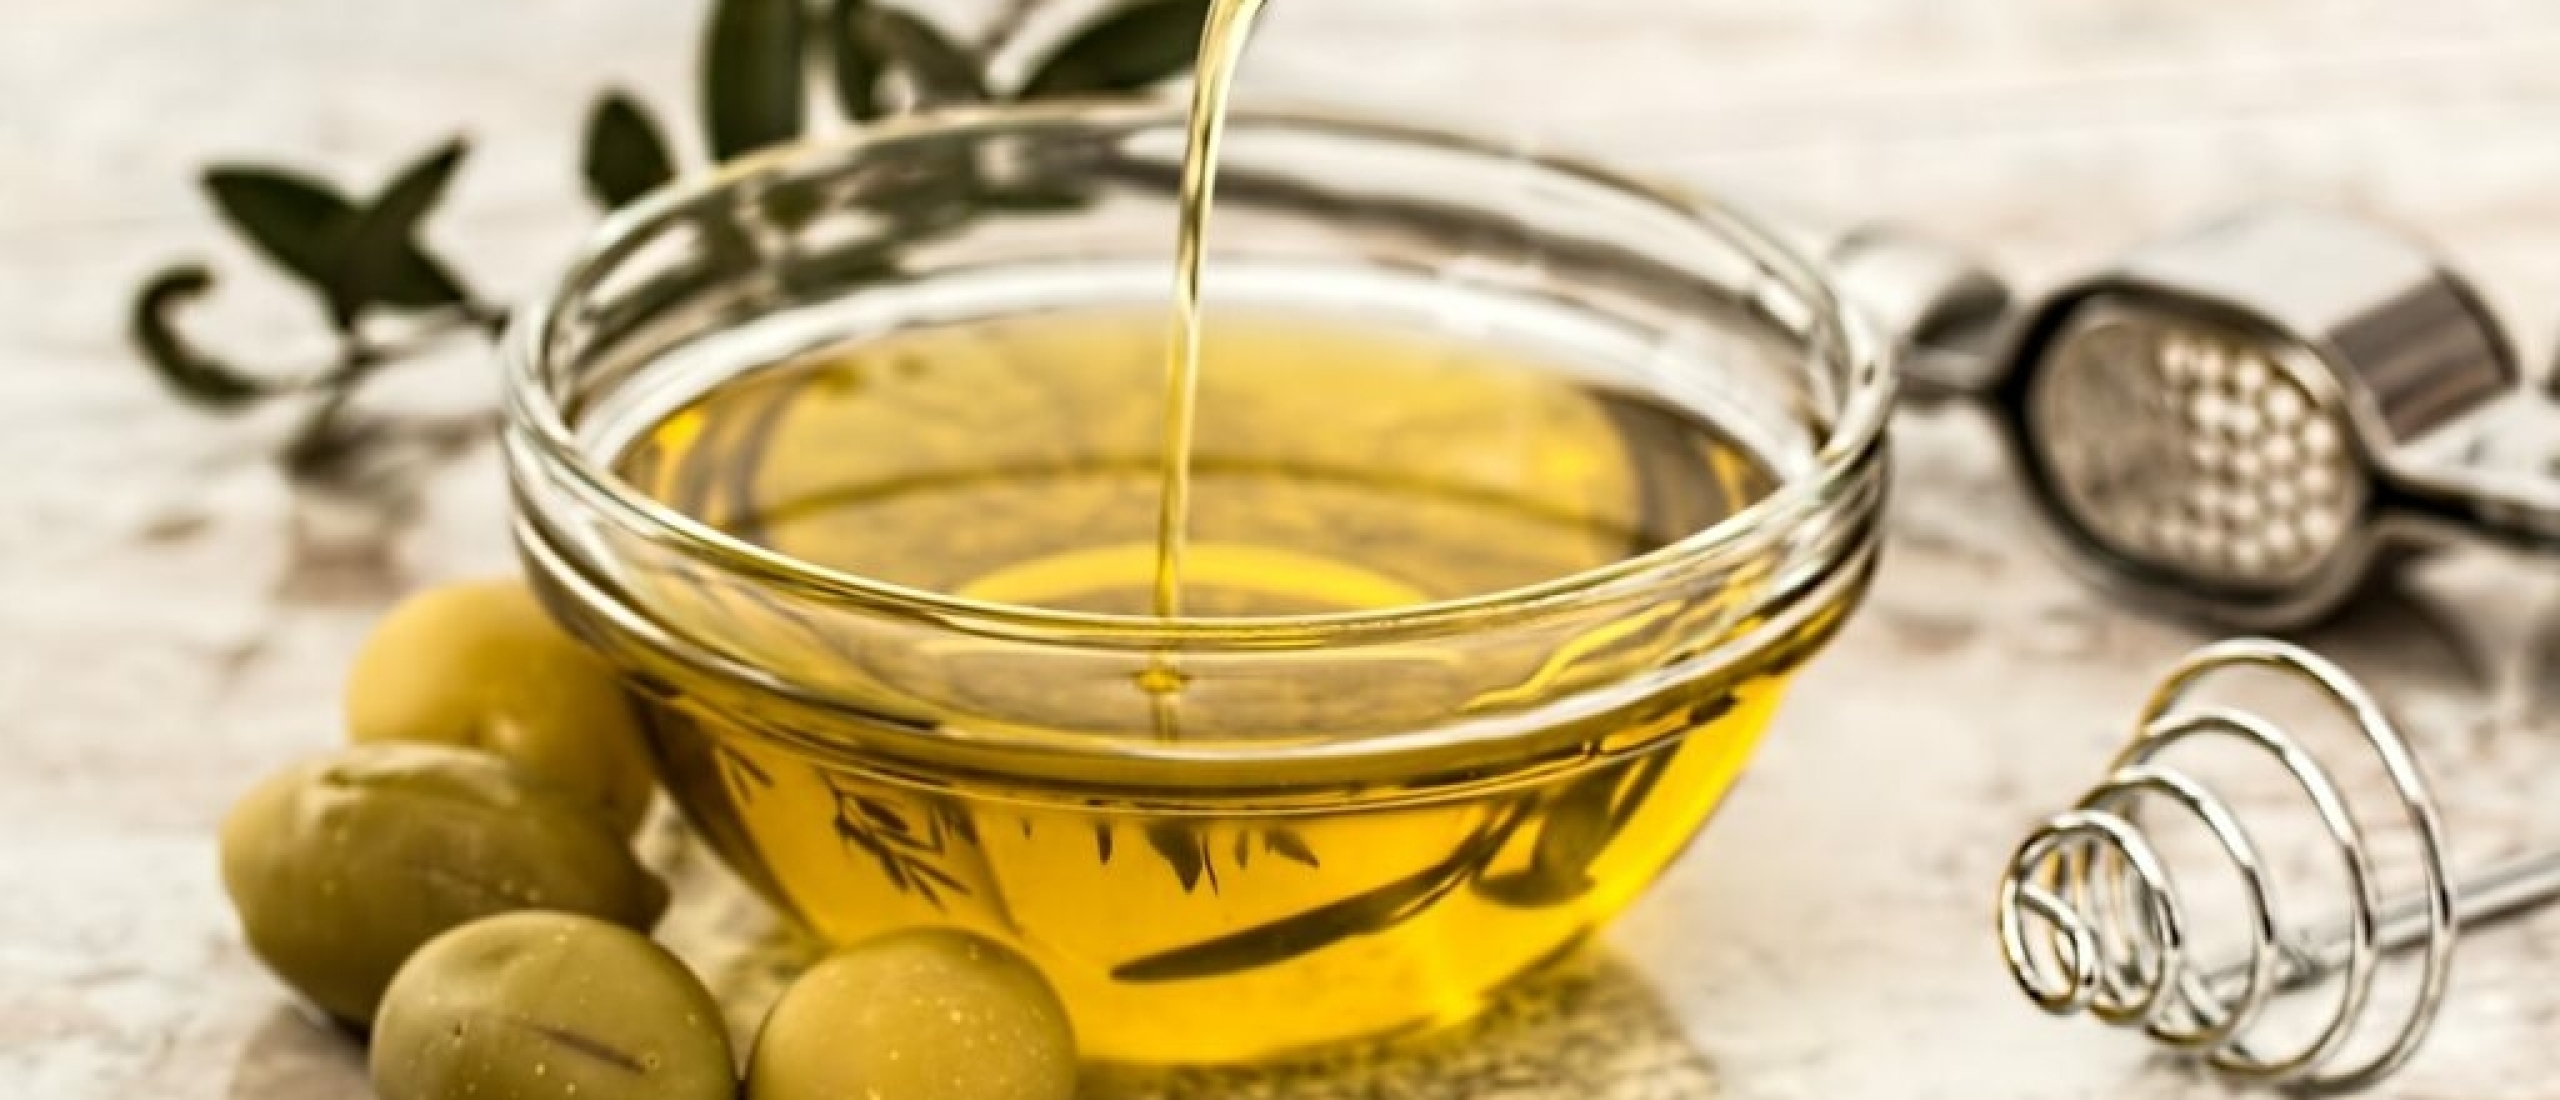 De beste manieren om olijfolie te gebruiken in jouw gerechten